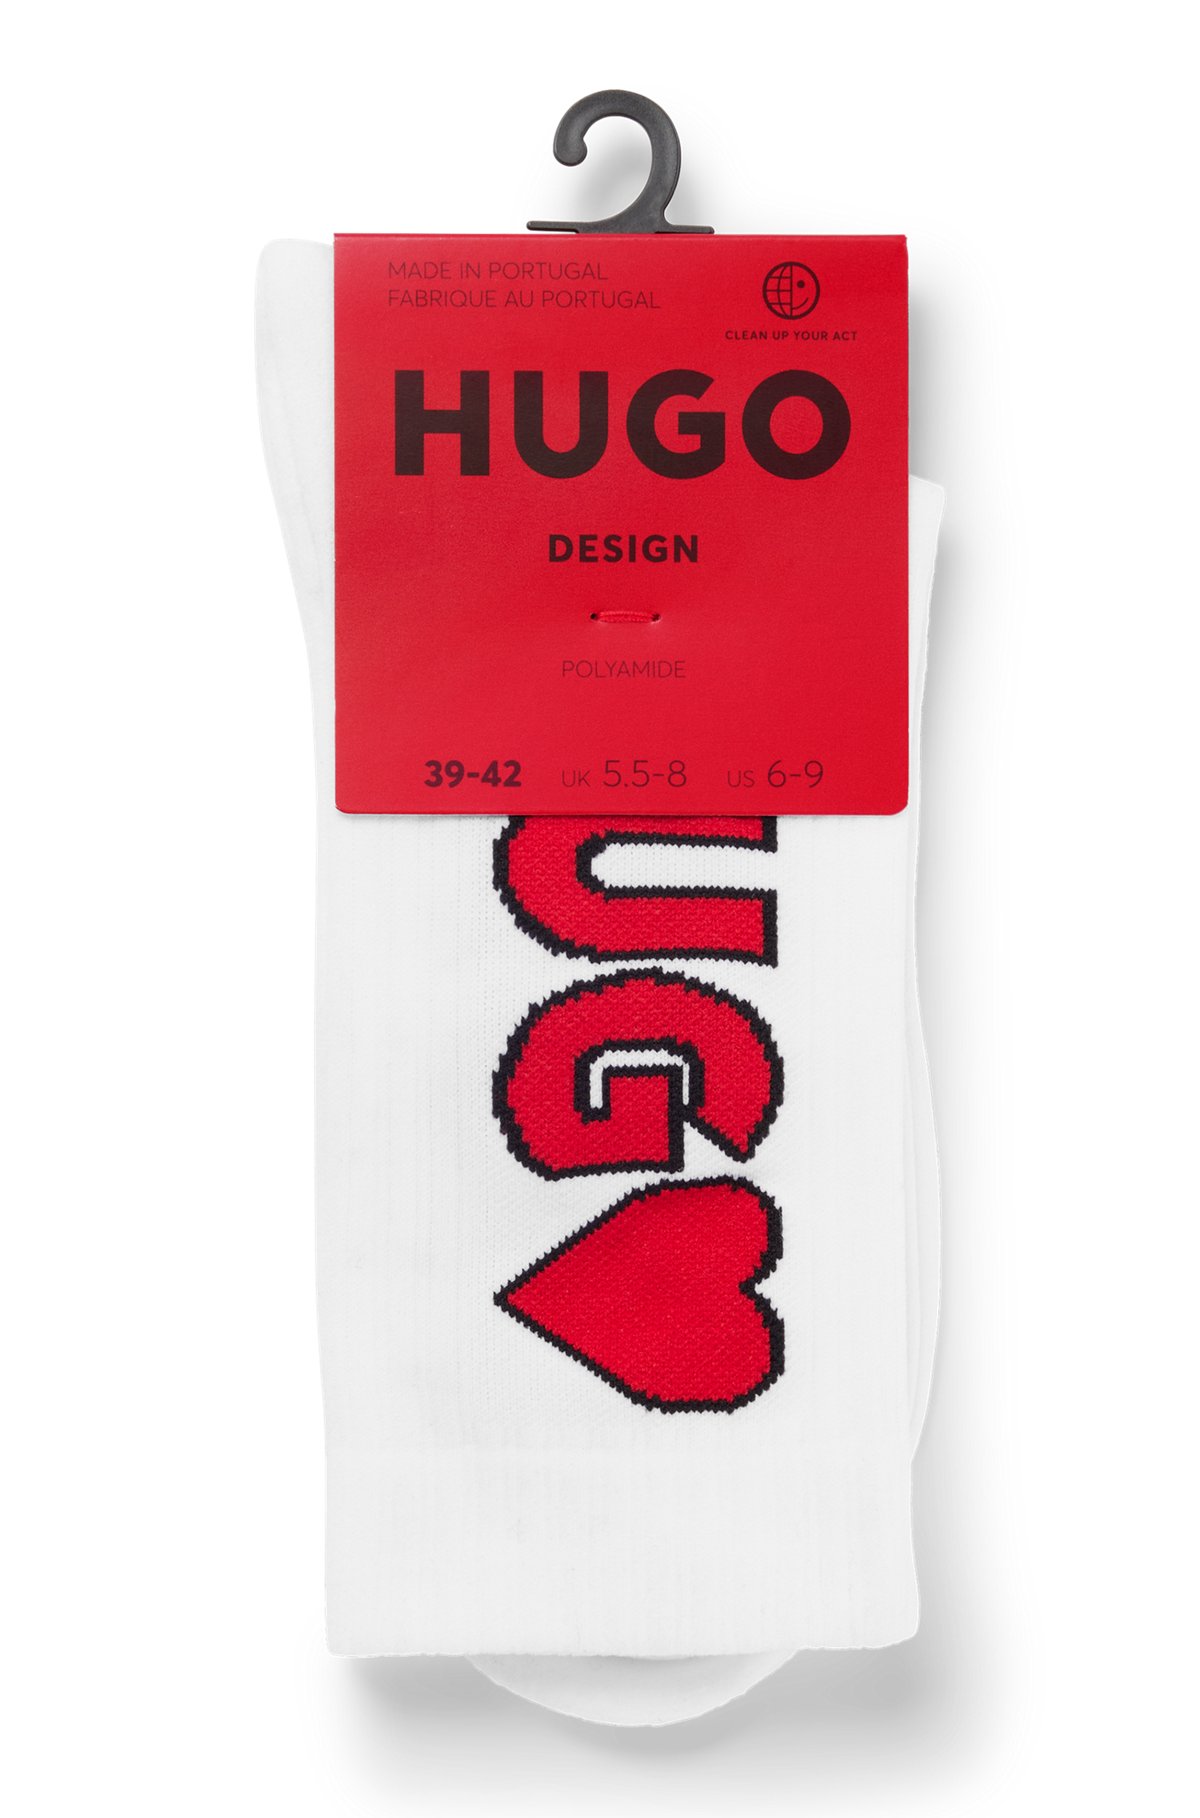 Unisex quarter-length socks with logo, White